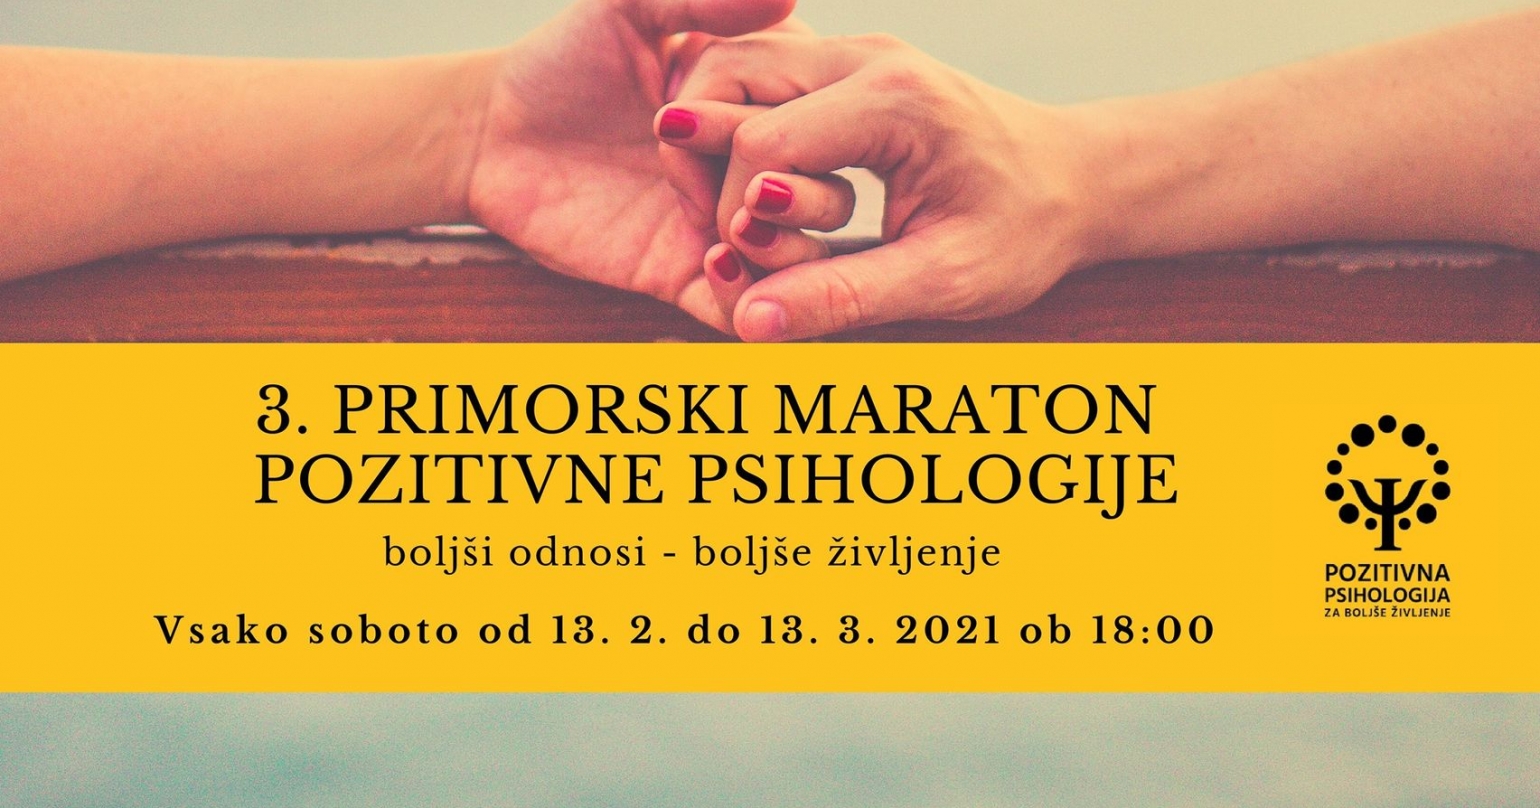 3. primorski maraton pozitivne psihologije